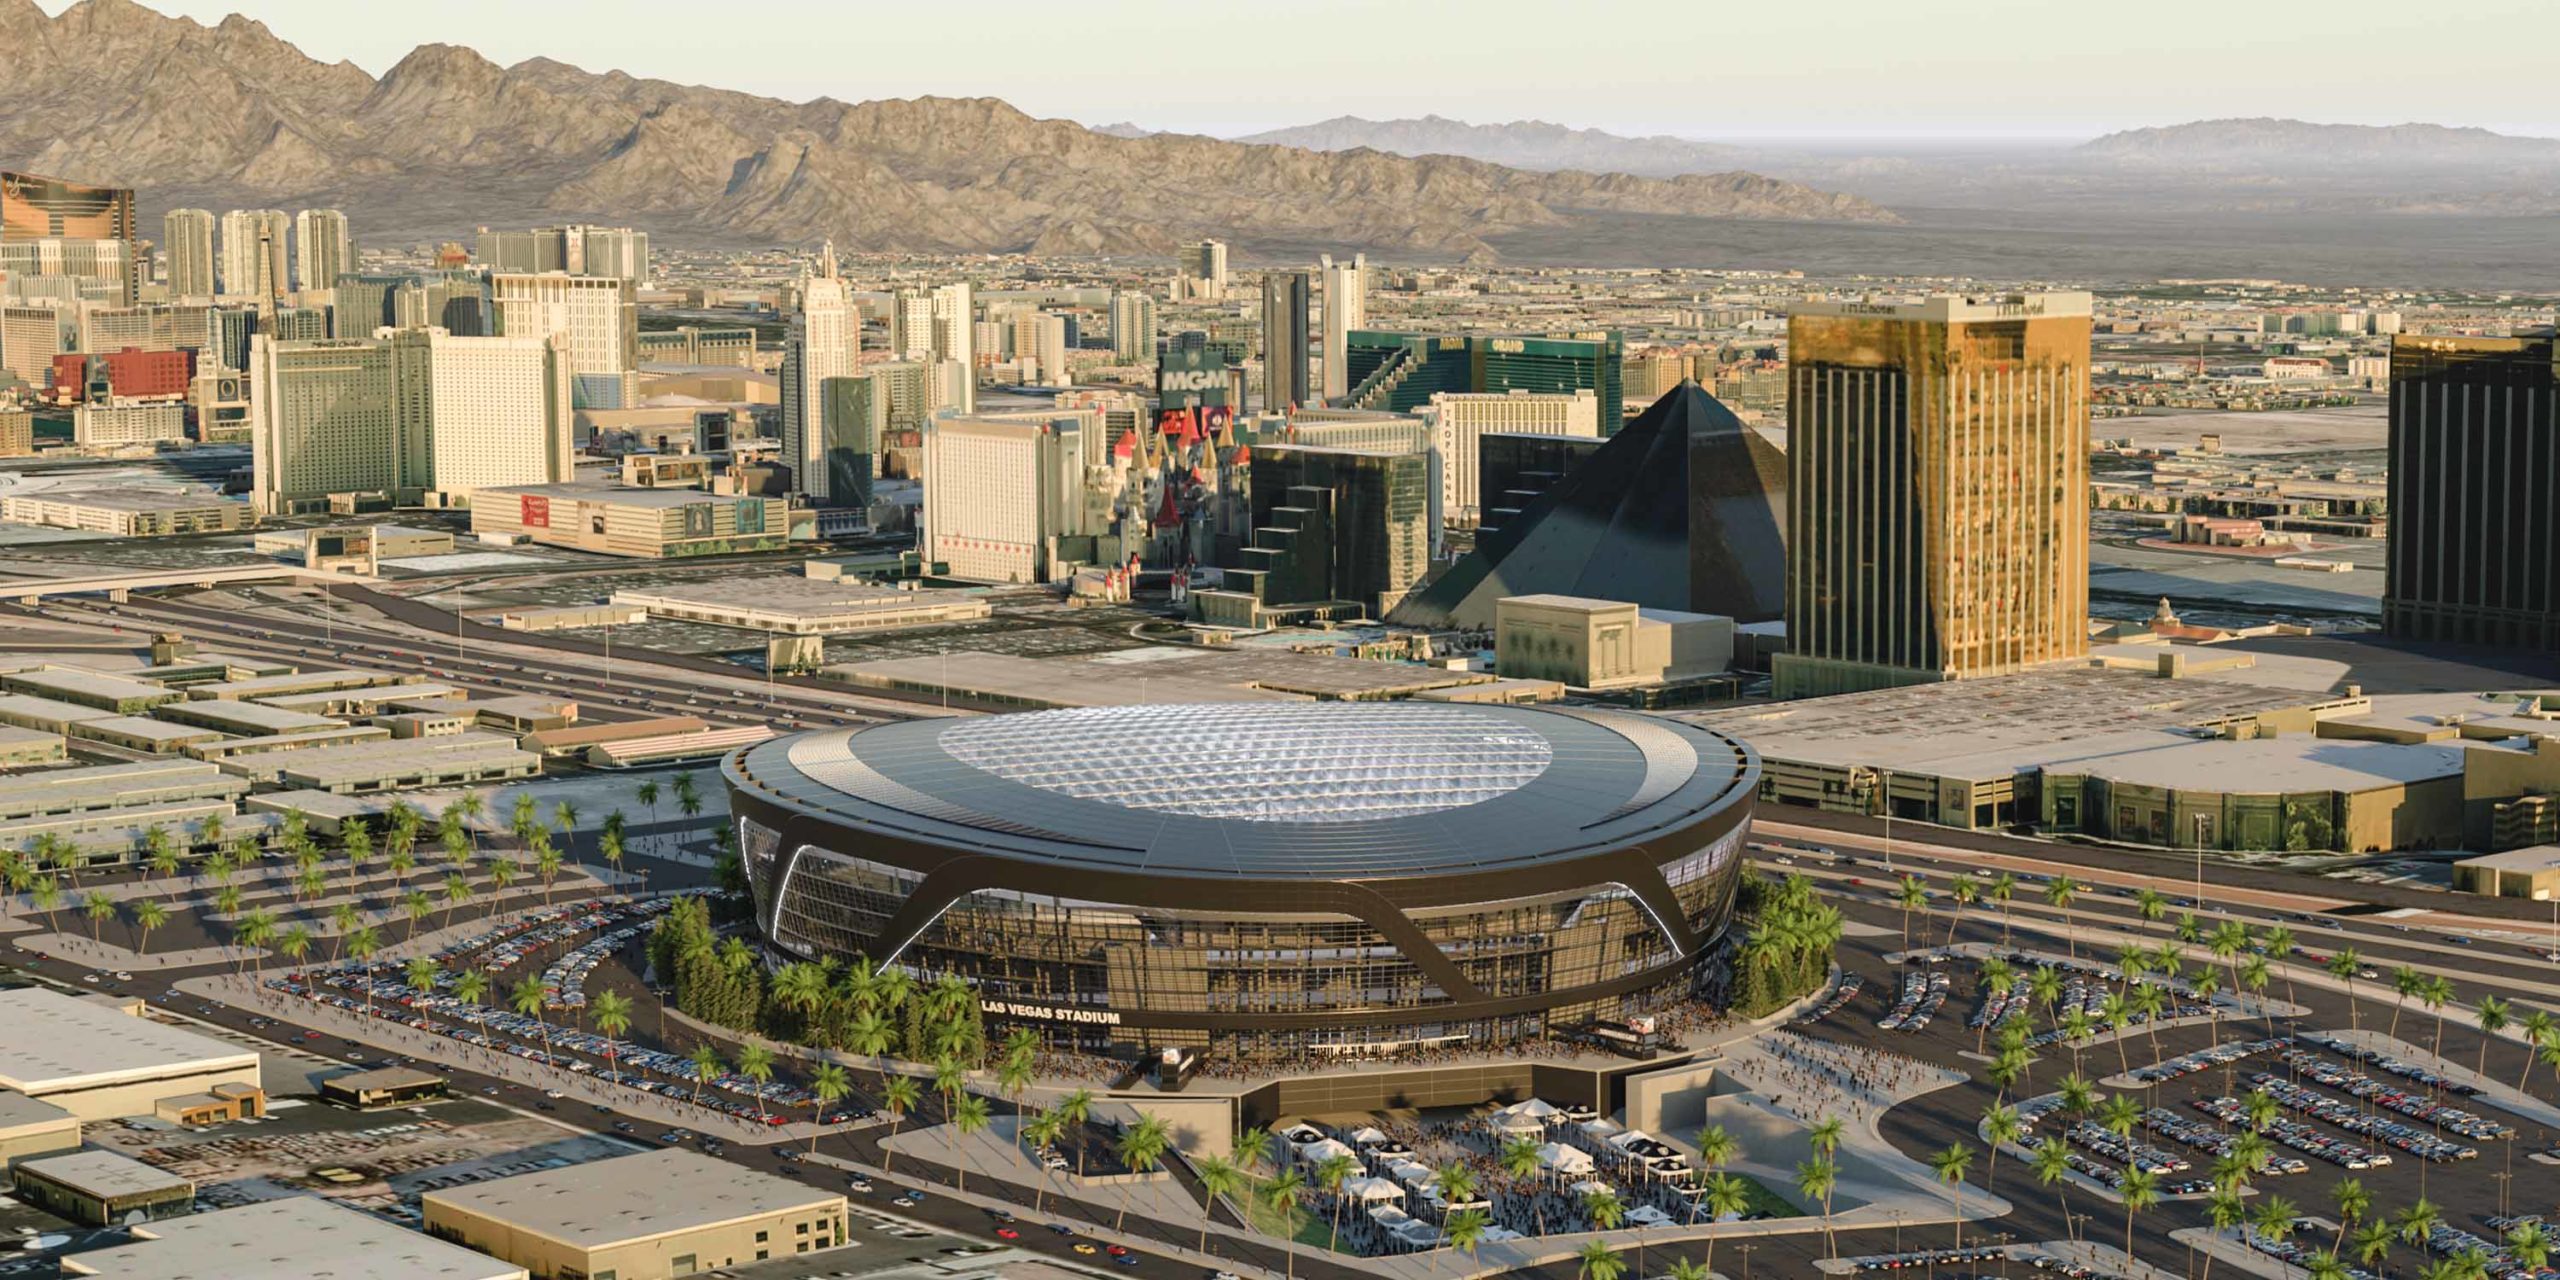 Special doors, roof to give Las Vegas Raiders stadium outdoor feel, Allegiant Stadium